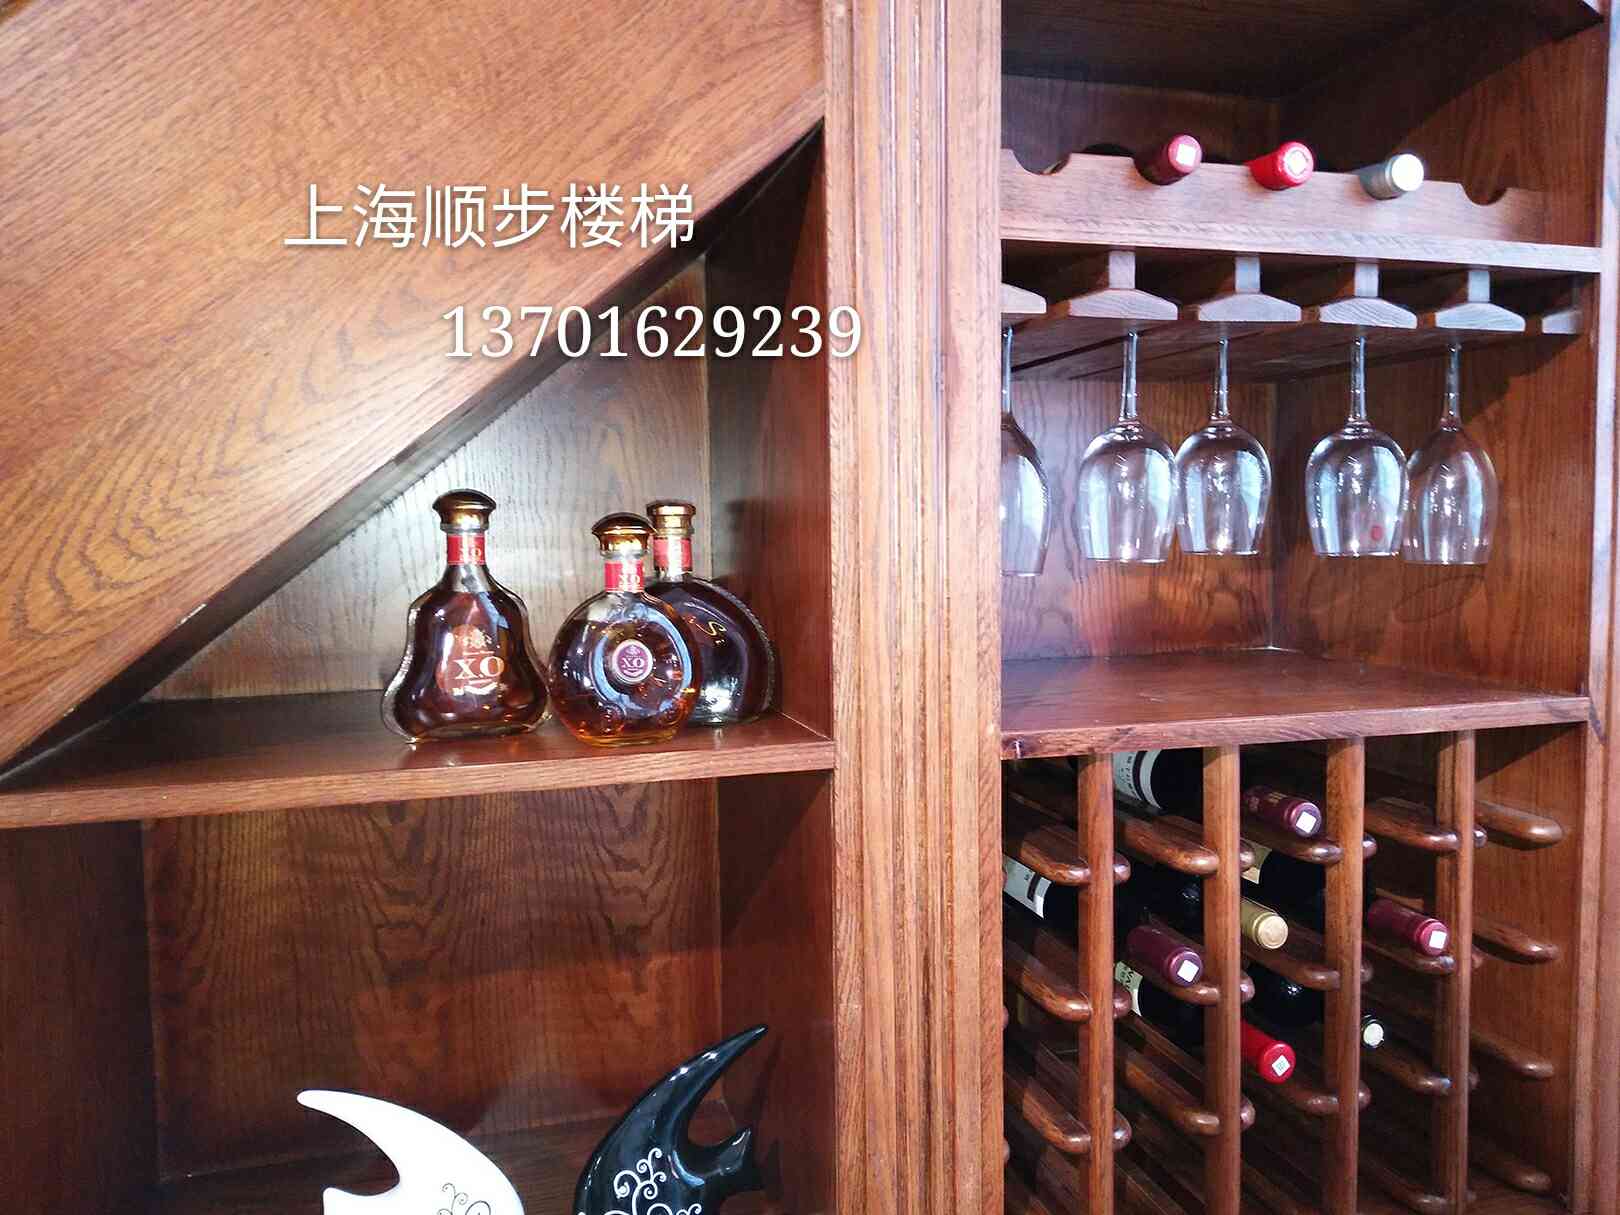 上海顺步楼梯厂家直销储藏柜实木楼梯豪华版